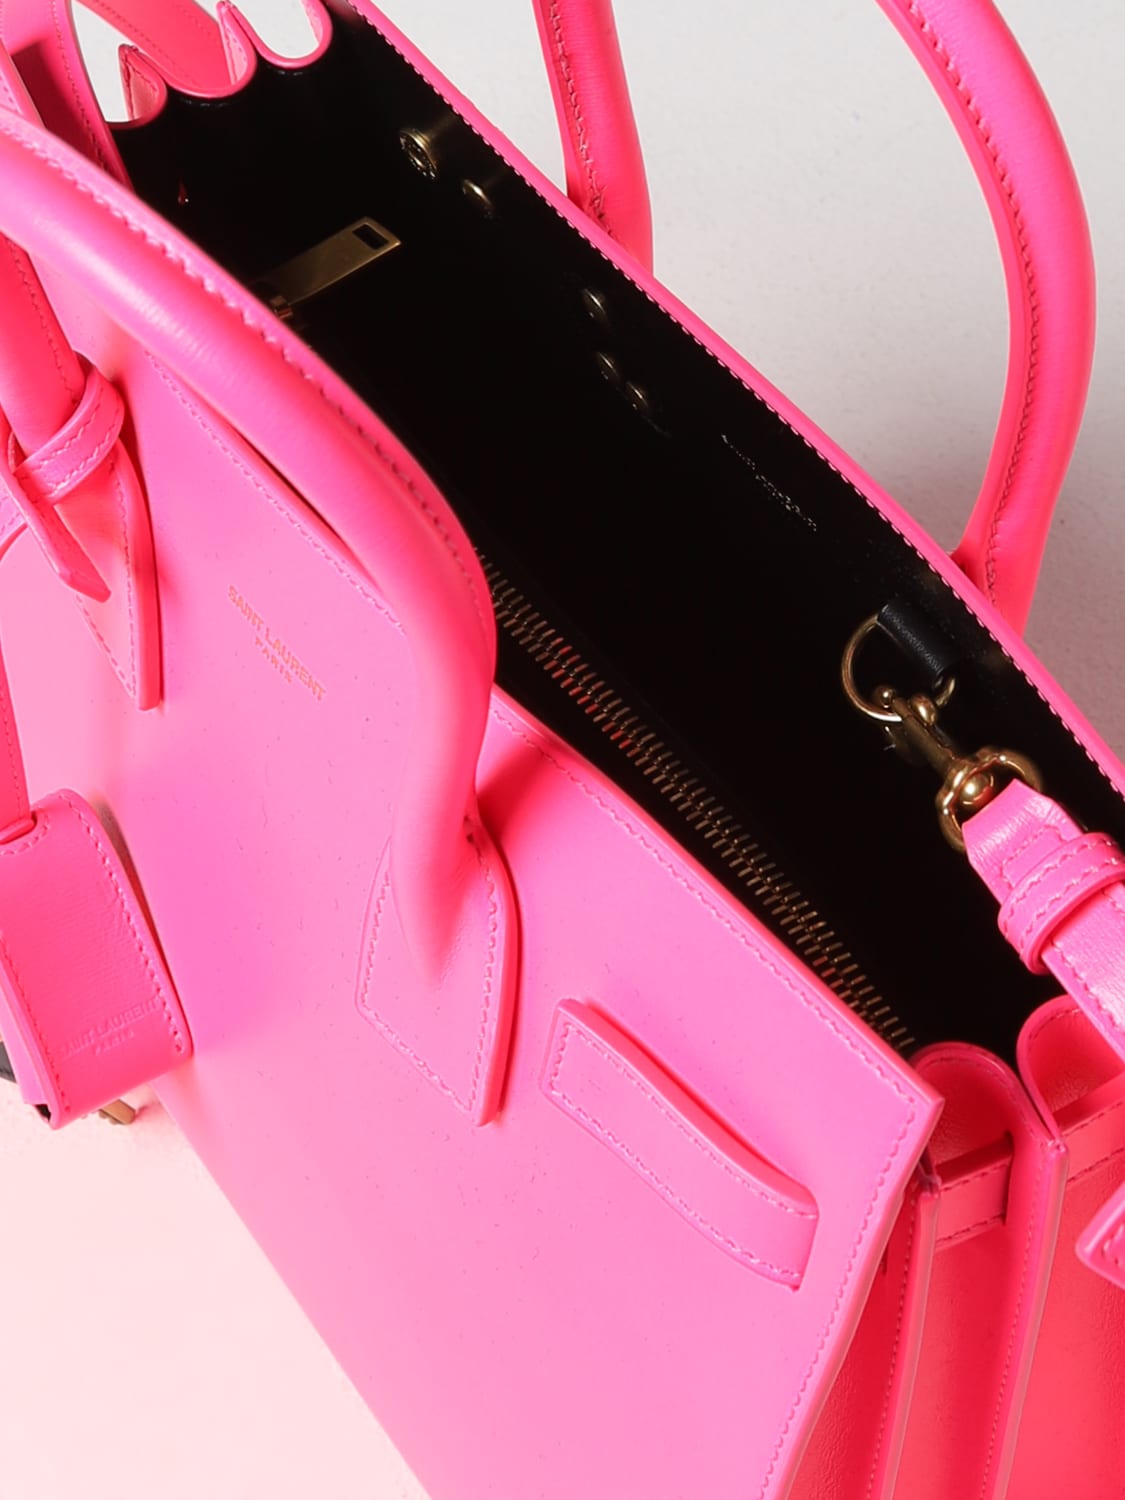 SAINT LAURENT: Sac de Jour leather bag - Pink  Saint Laurent handbag  421863AABMK online at